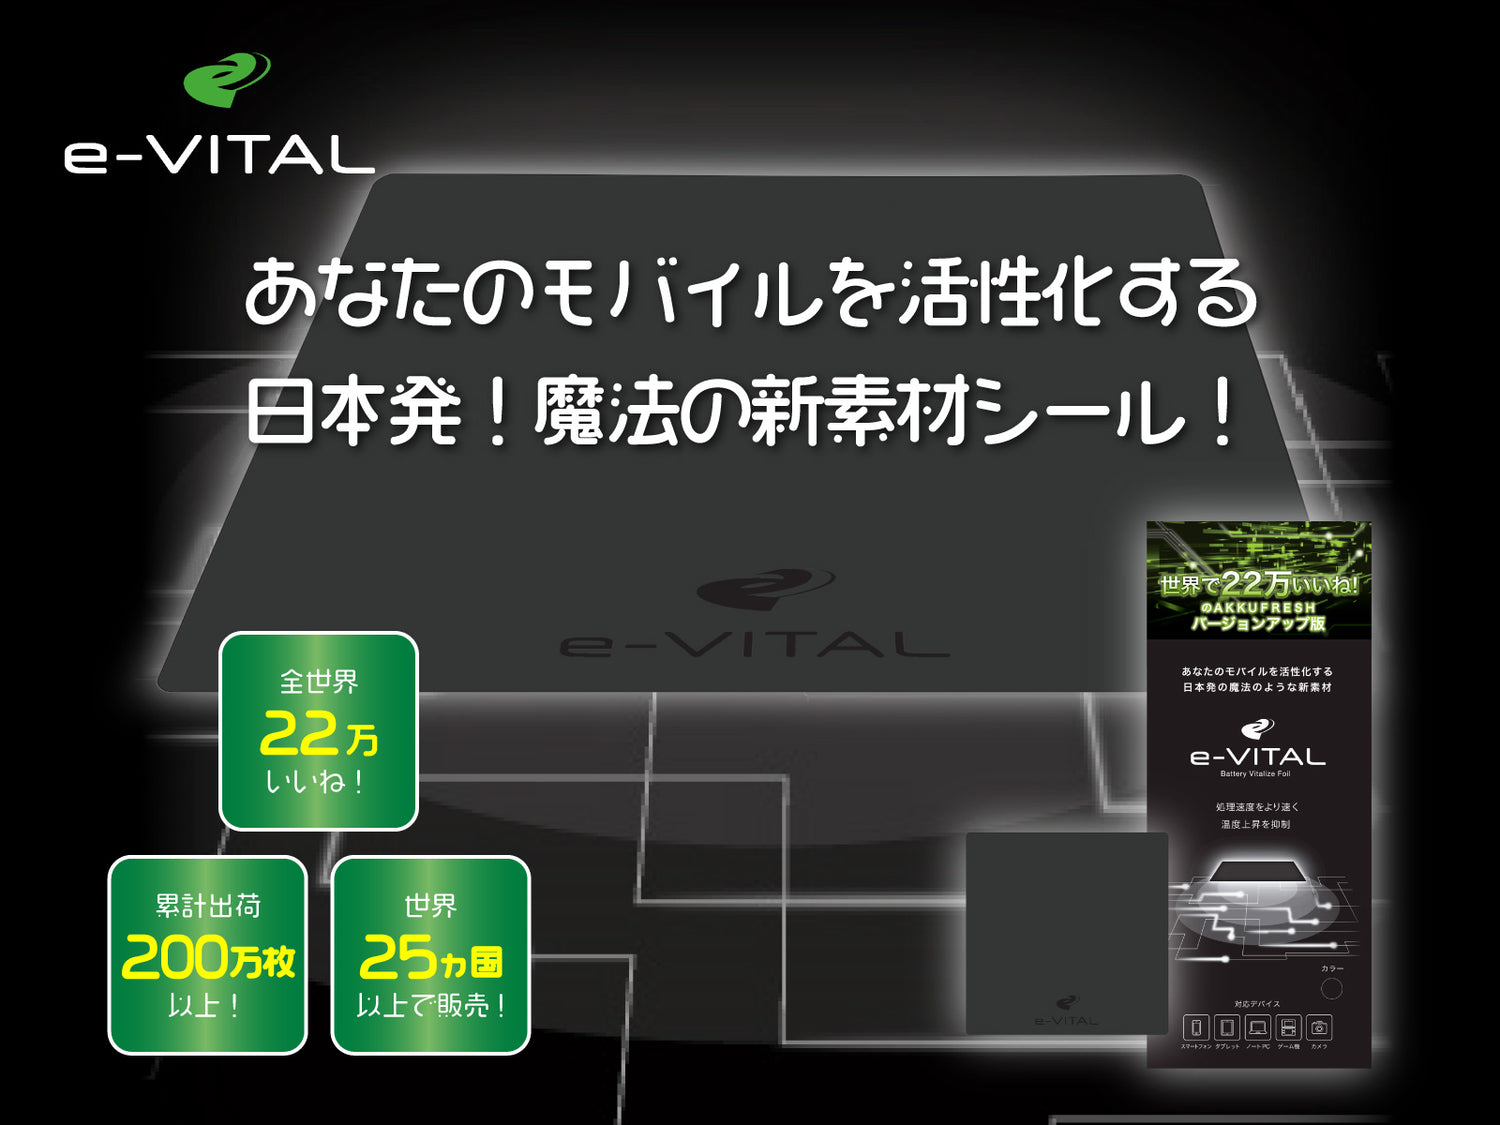 e-VITALTOP画像ー「ピュアブラック」を配合したモバイルデバイス向けシート